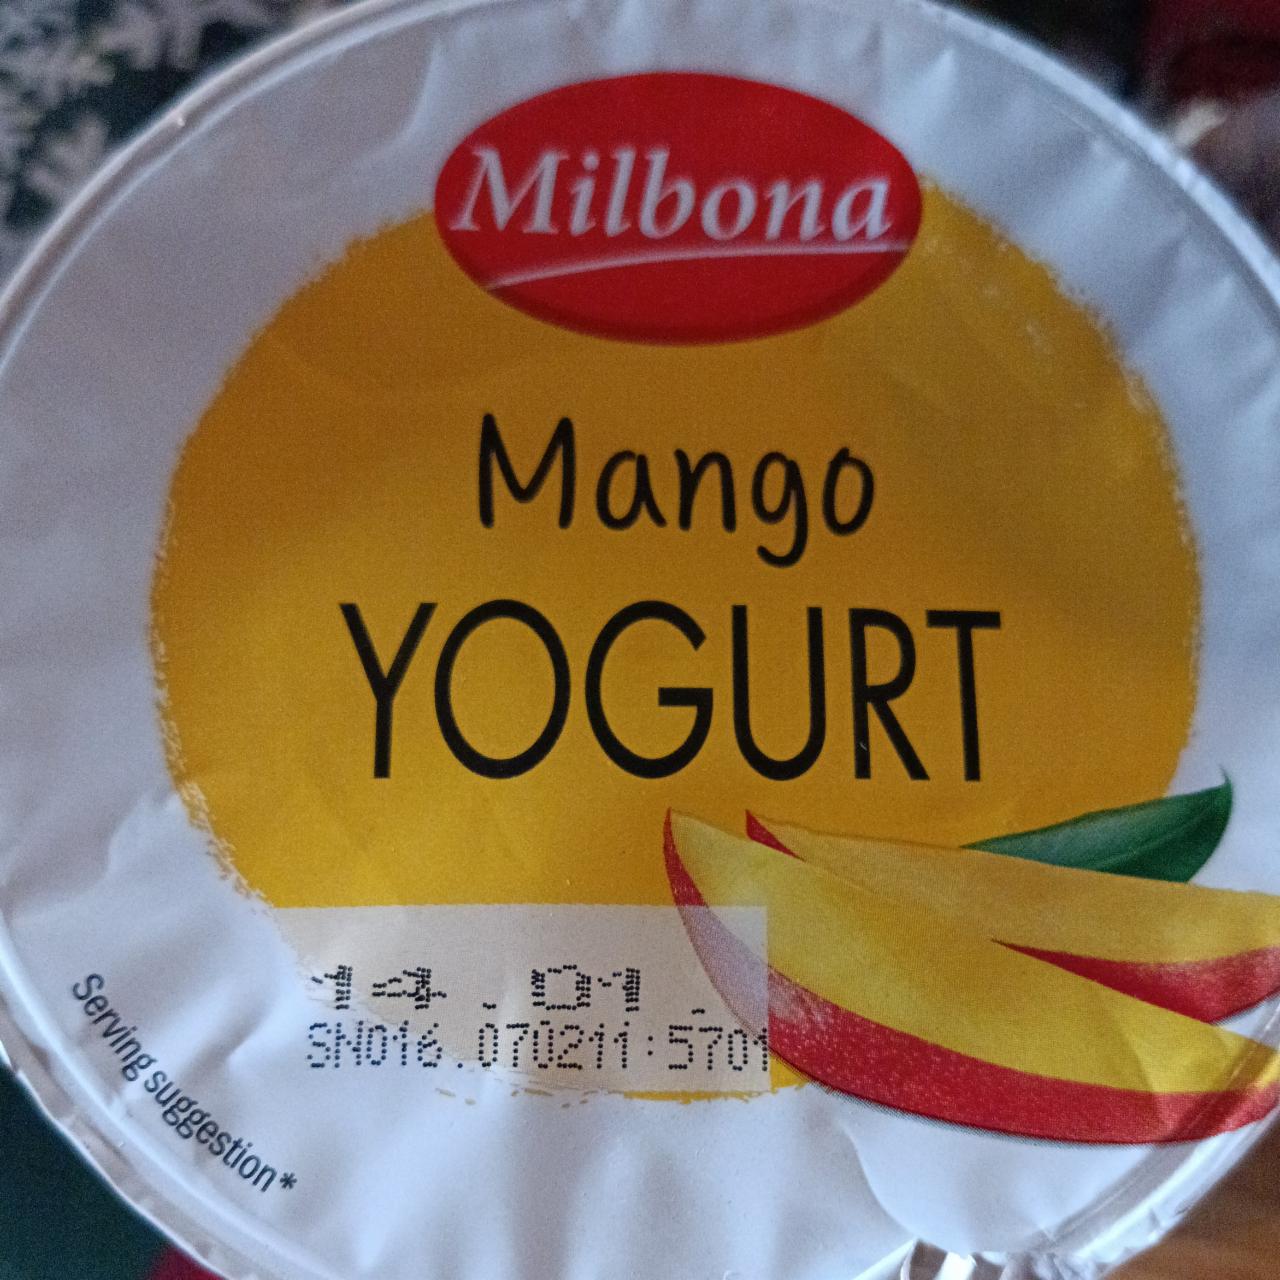 Fotografie - Mango Yogurt Milbona